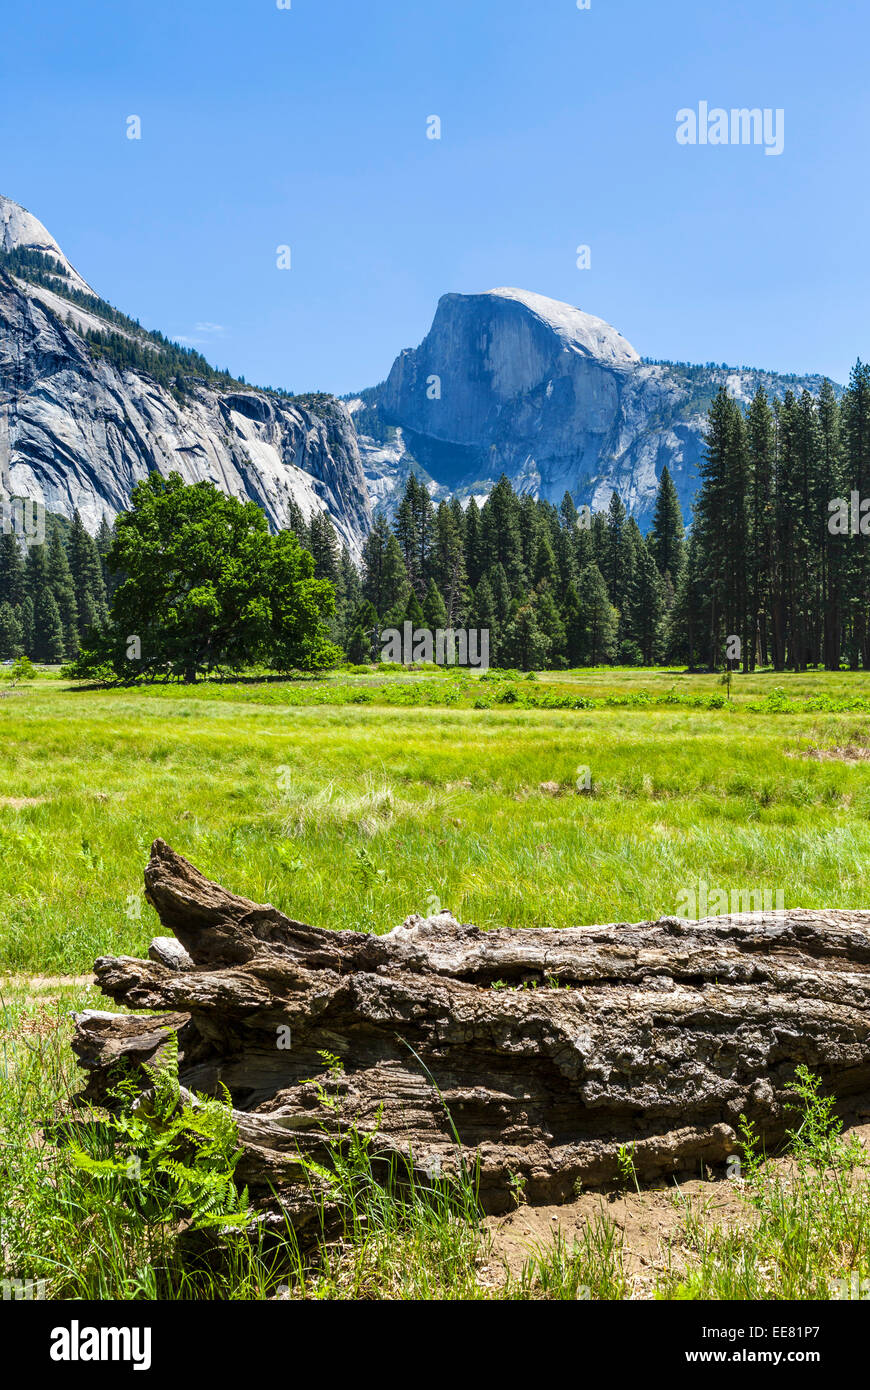 Half Dome, Yosemite Valley, Yosemite National Park, Sierra Nevada, en el norte de California, EE.UU. Foto de stock